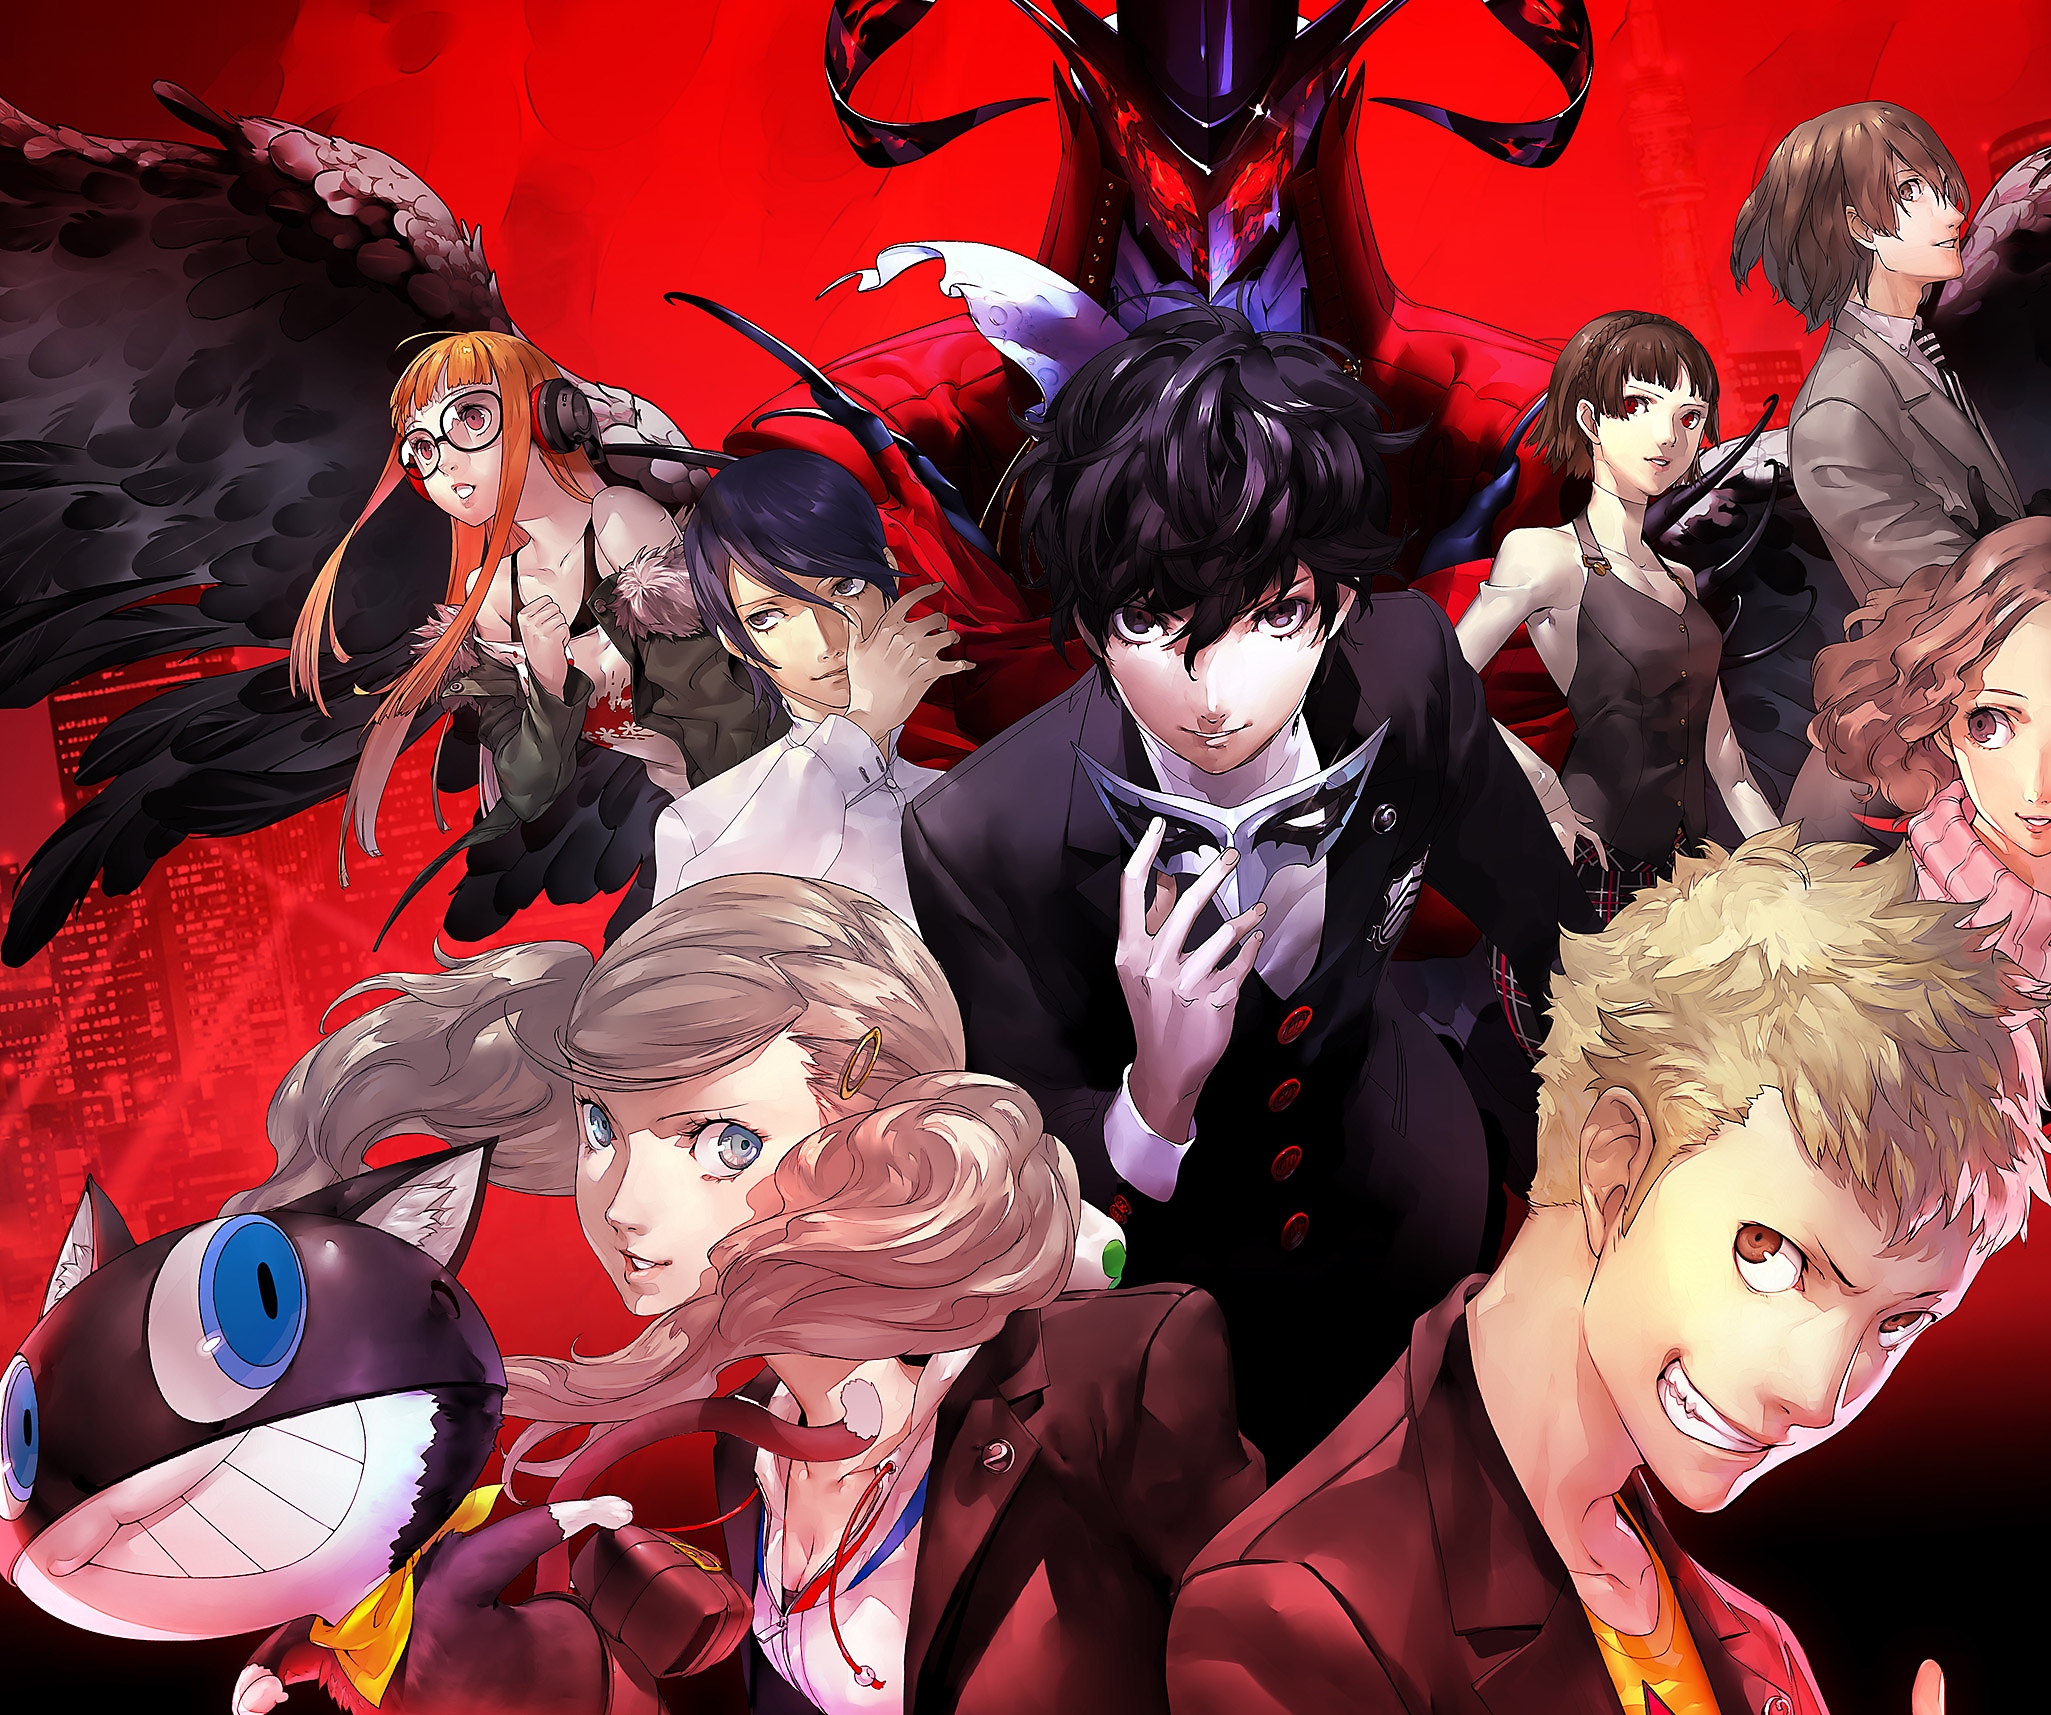 صورة فنية أساسية من Persona 5 تعرض لقطة جماعية للشخصيات الرئيسية على خلفية حمراء.